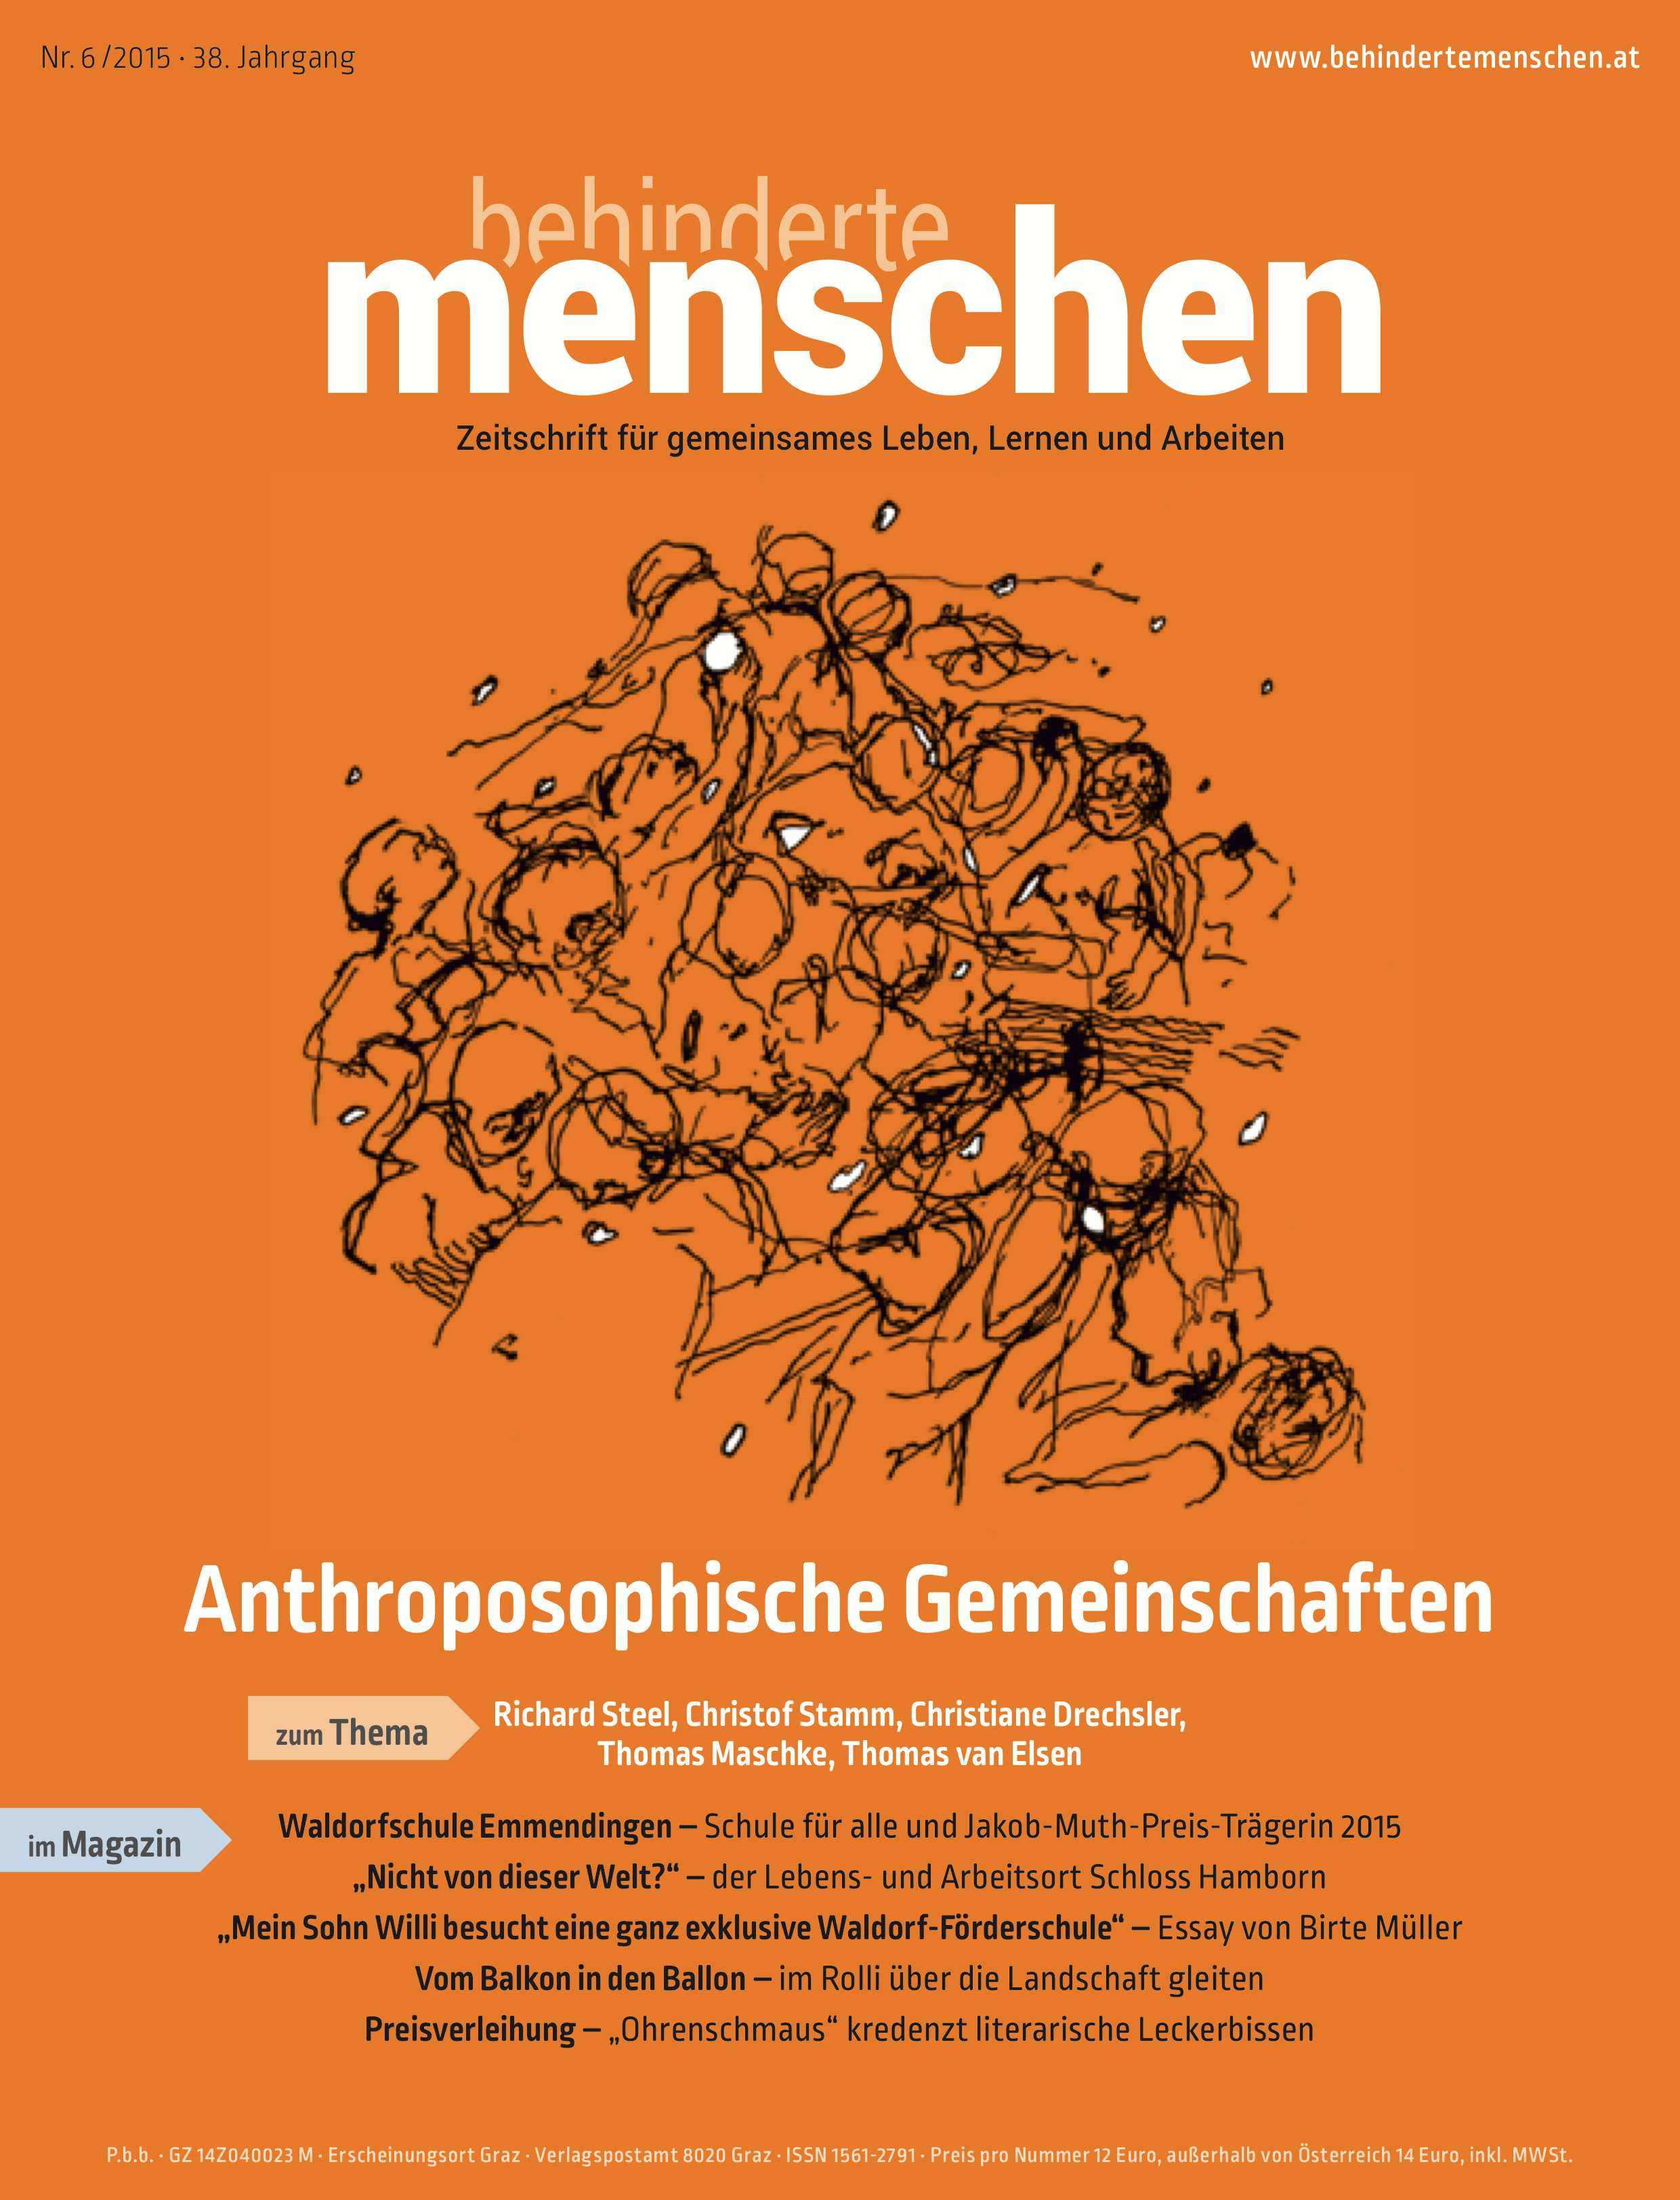 Titelbild der Zeitschrift BEHINDERTE MENSCHEN, Ausgabe 6/2015 "Anthroposophische Gemeinschaften"